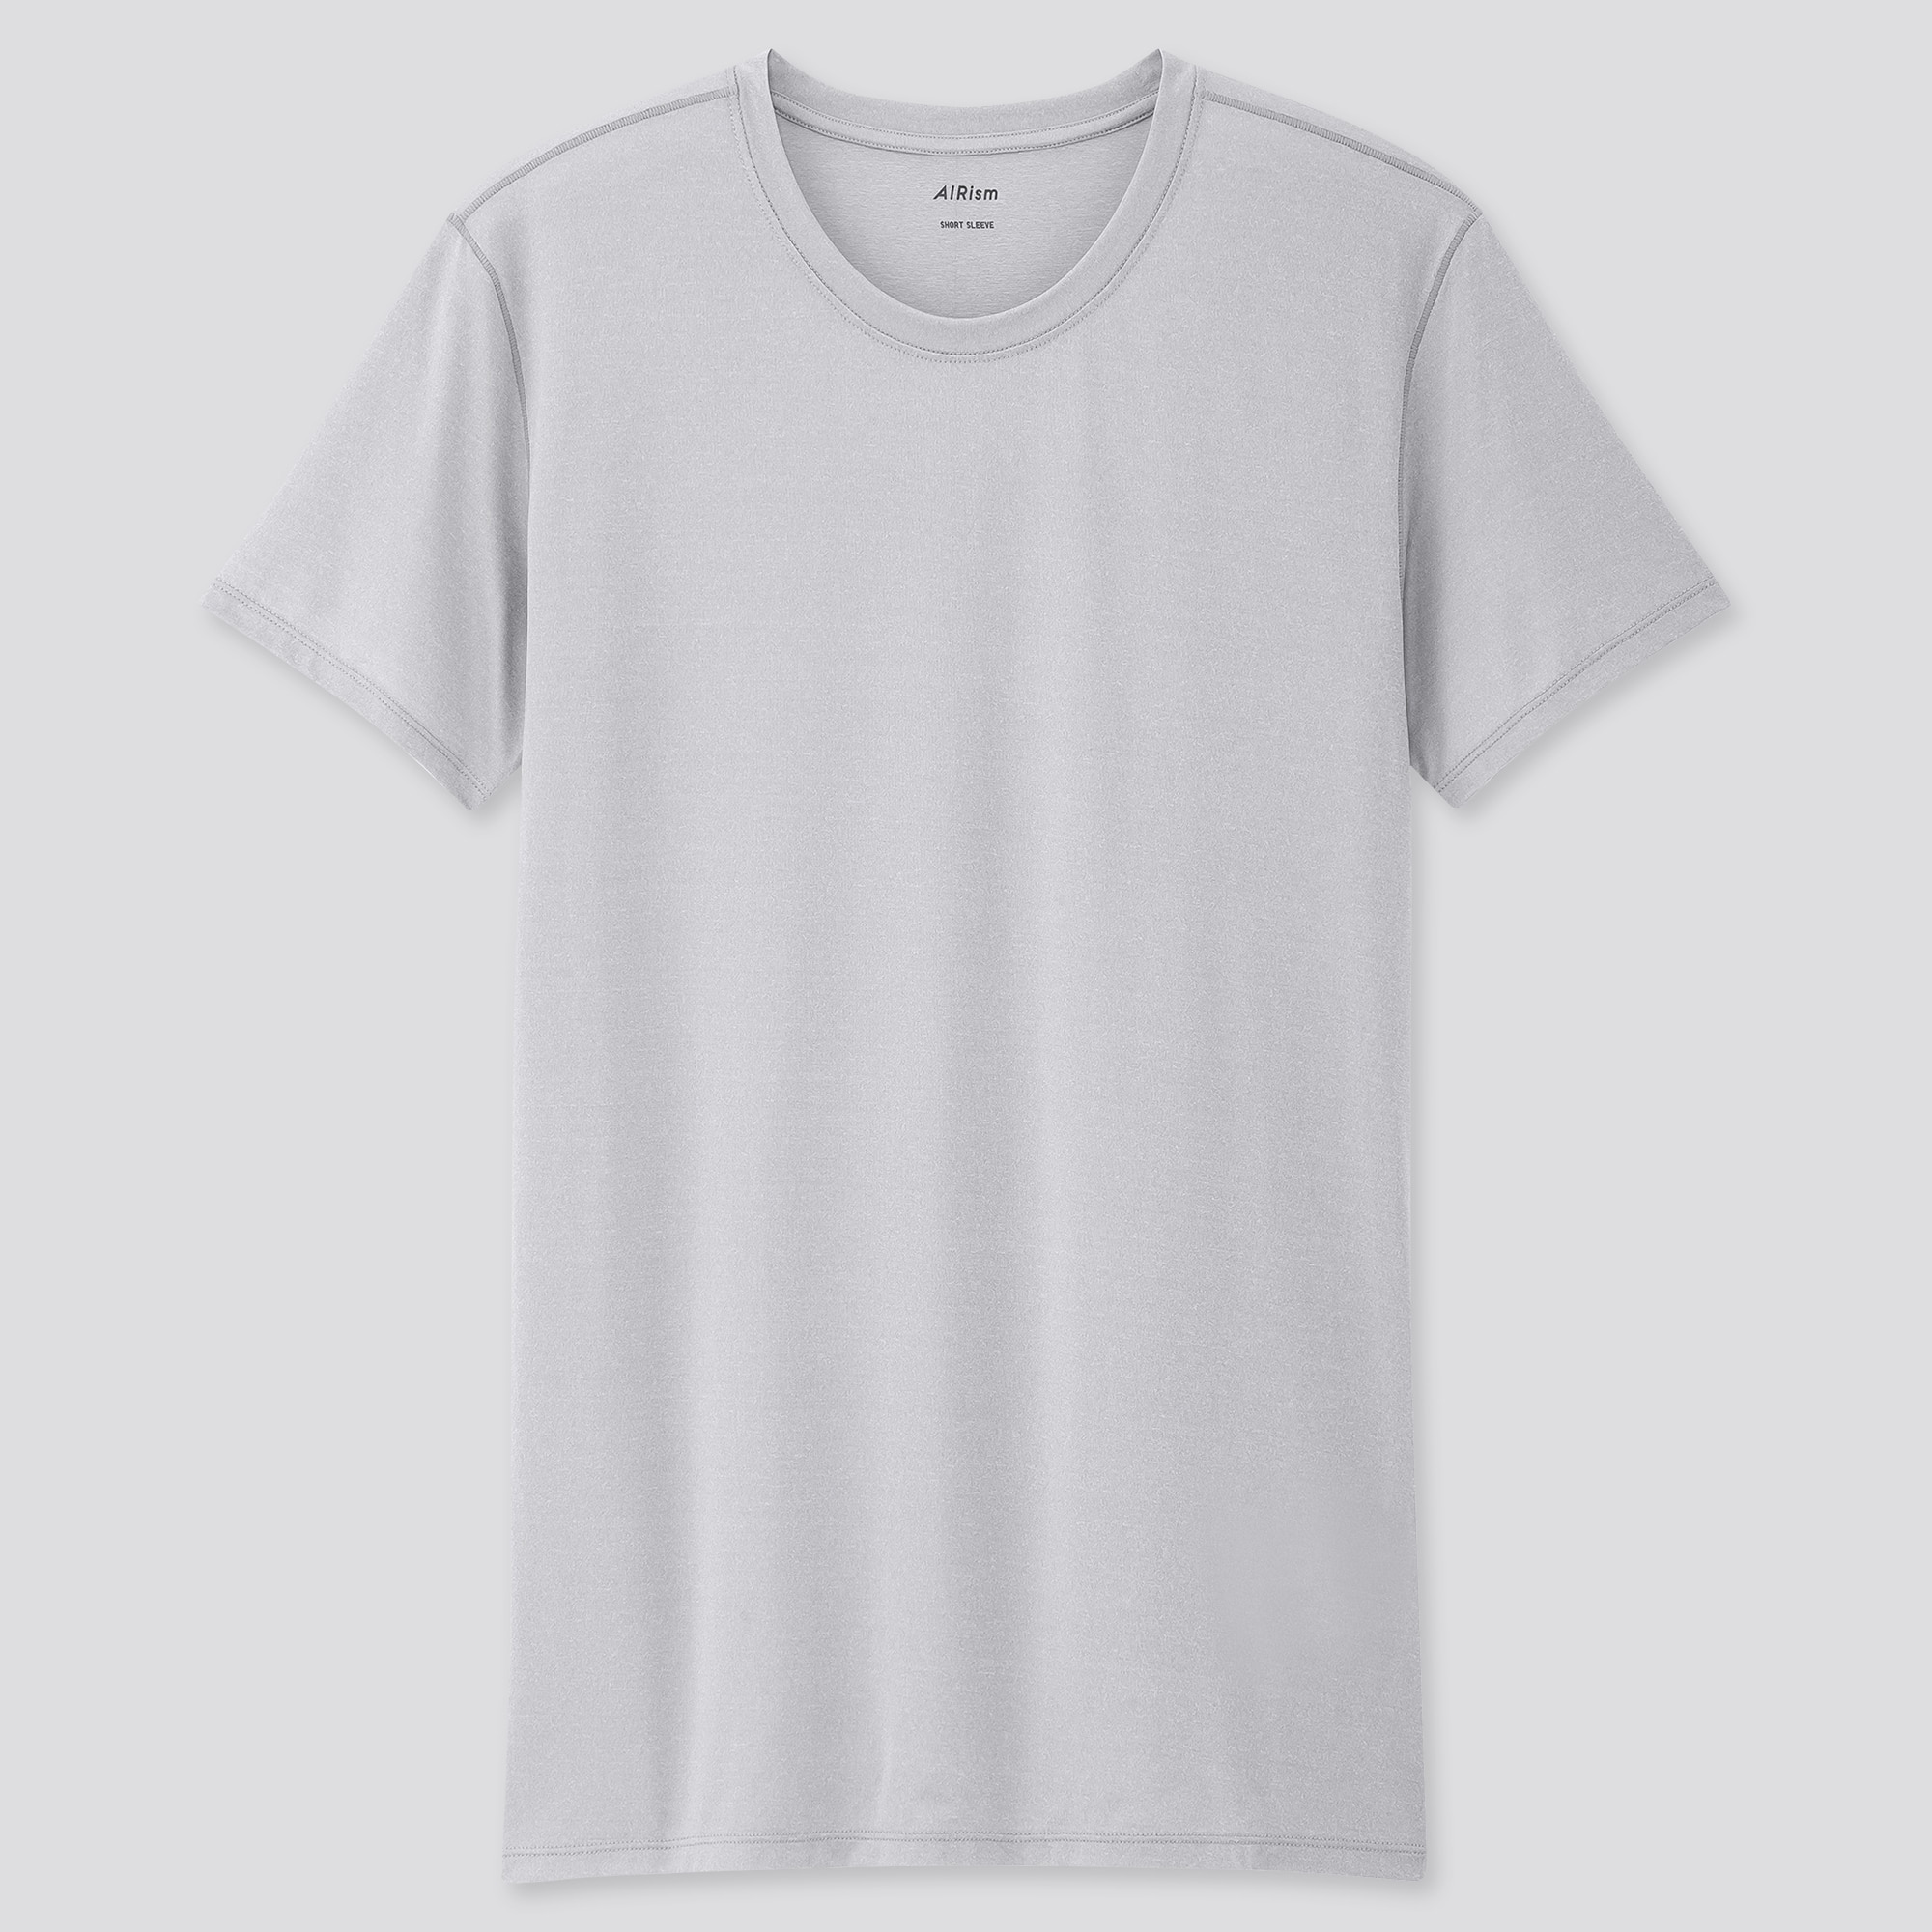 インナーシャツ メンズの関連商品 ユニクロ